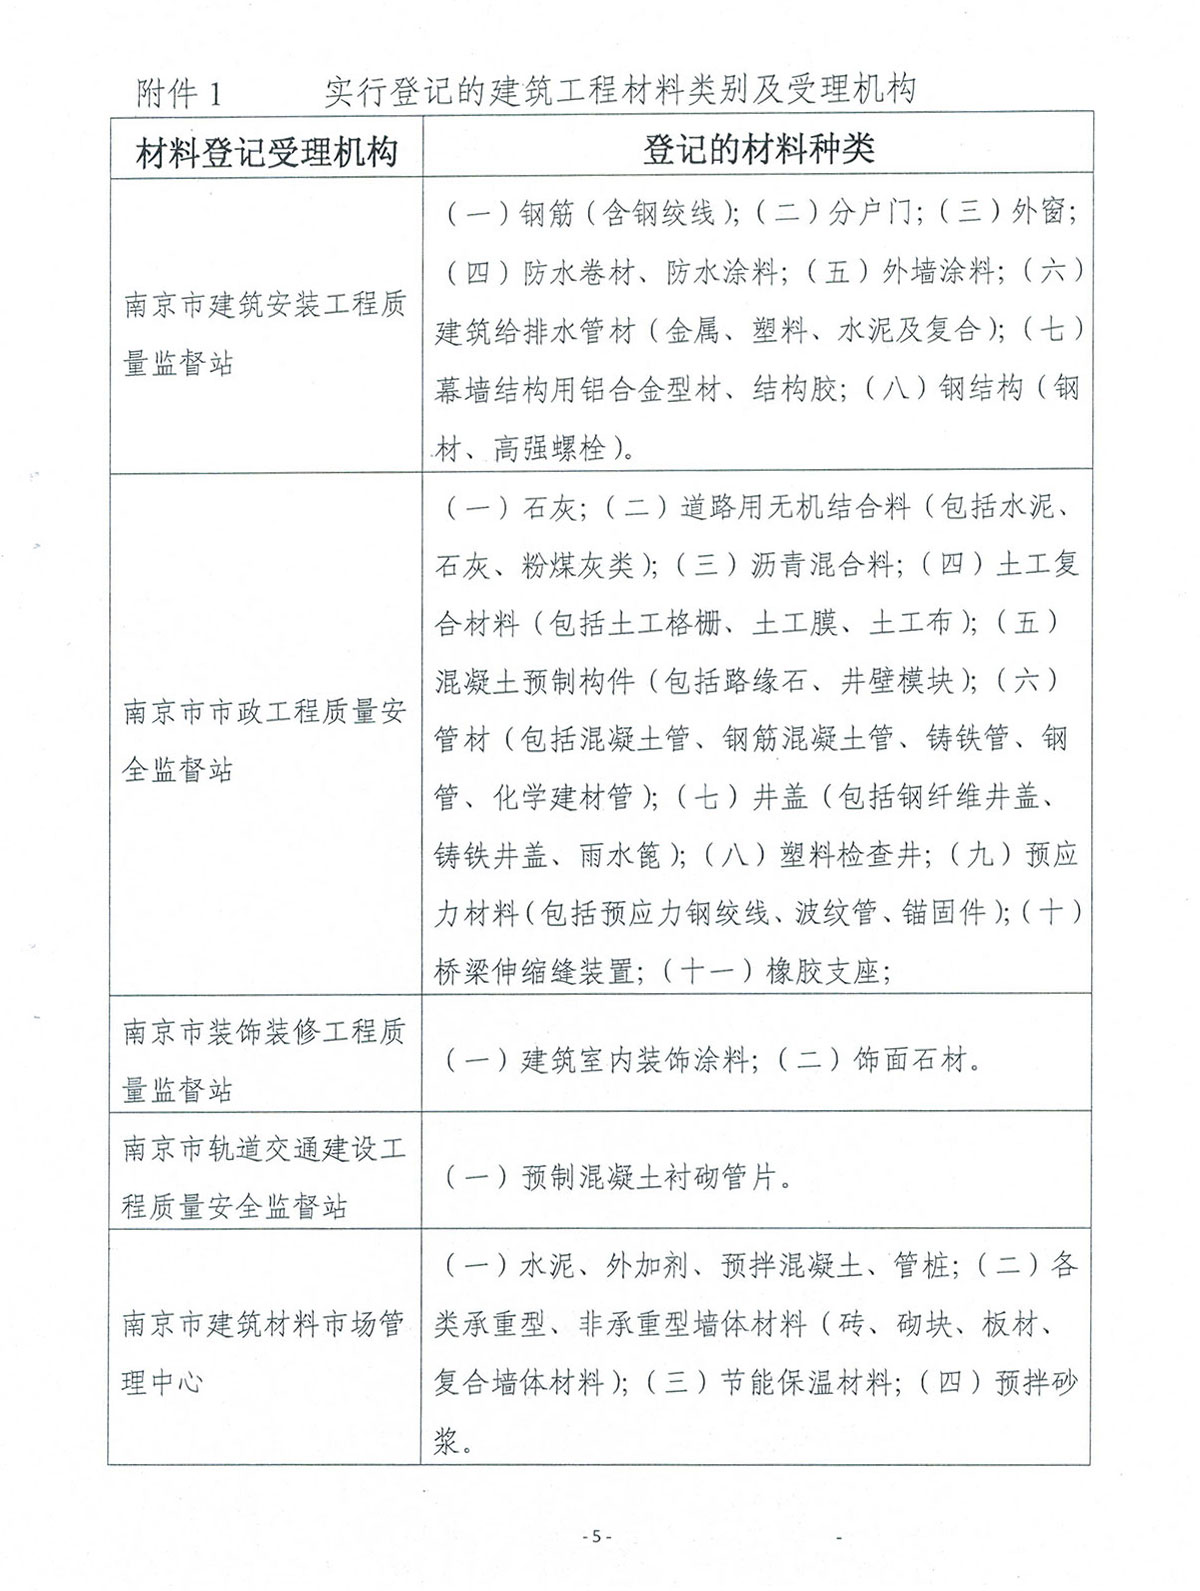 关于印发《南京市房屋建筑工程和市政基础设施工程材料登记管理办法（试行）》的通知(1)-5.jpg